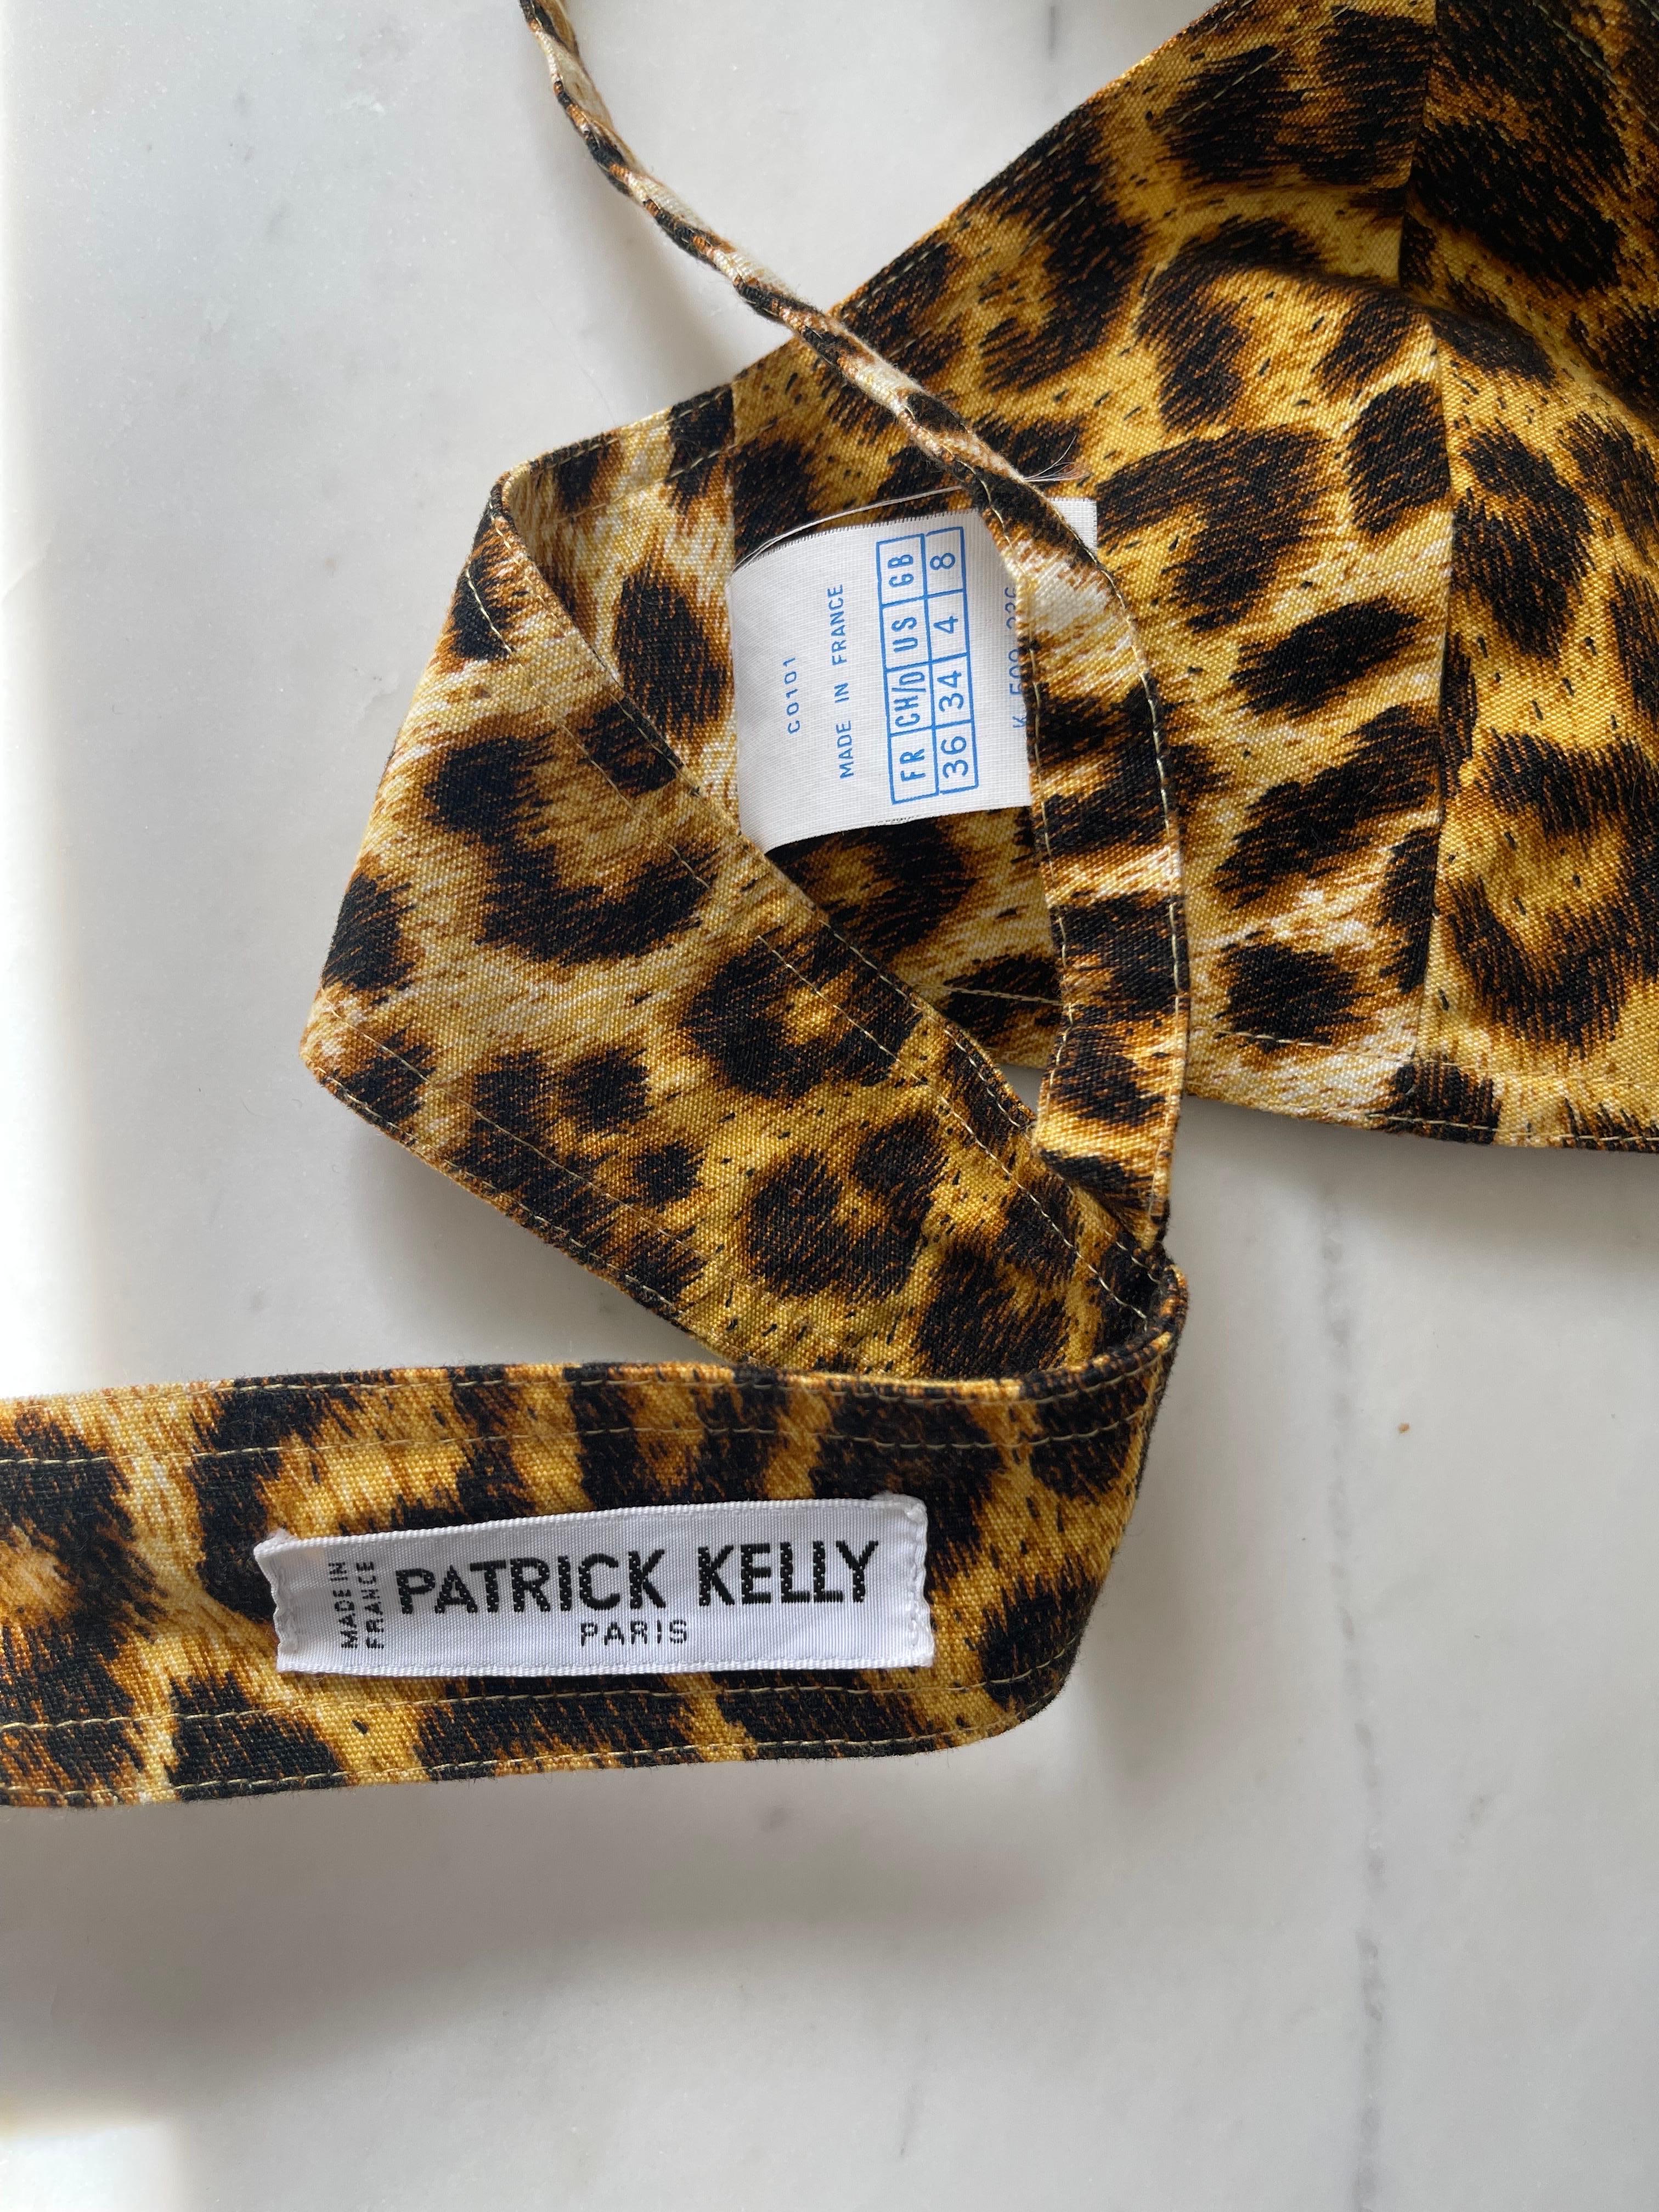 Extrem seltene 1980er PATRICK KELLY Paris Leopard Tier Baumwolle drucken BH / crop top ! Klassischer Tierdruck. Wird in der hinteren Mitte gebunden. Allein oder unter einem Blazer oder einer Strickjacke zu tragen. 
In tollem, ungetragenem Zustand